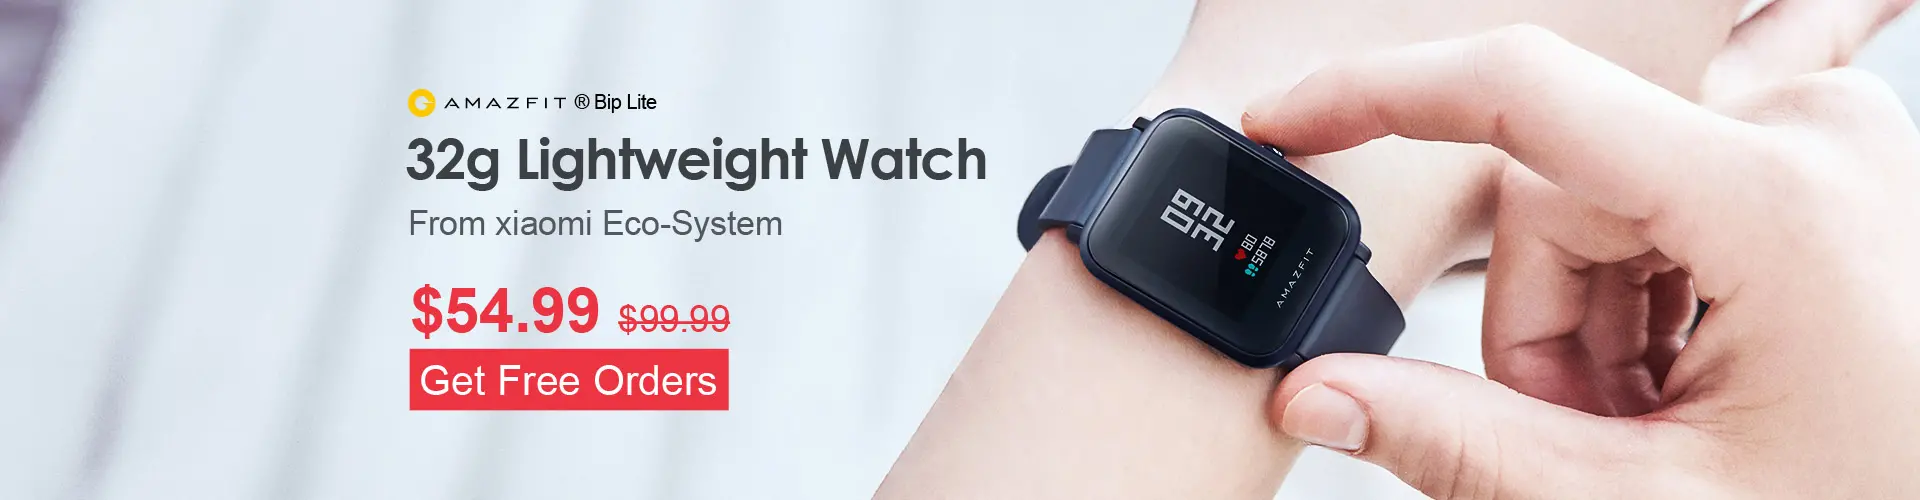 AMAZFIT Bip Lite Lightweight Days Standby Smartwatch Deal